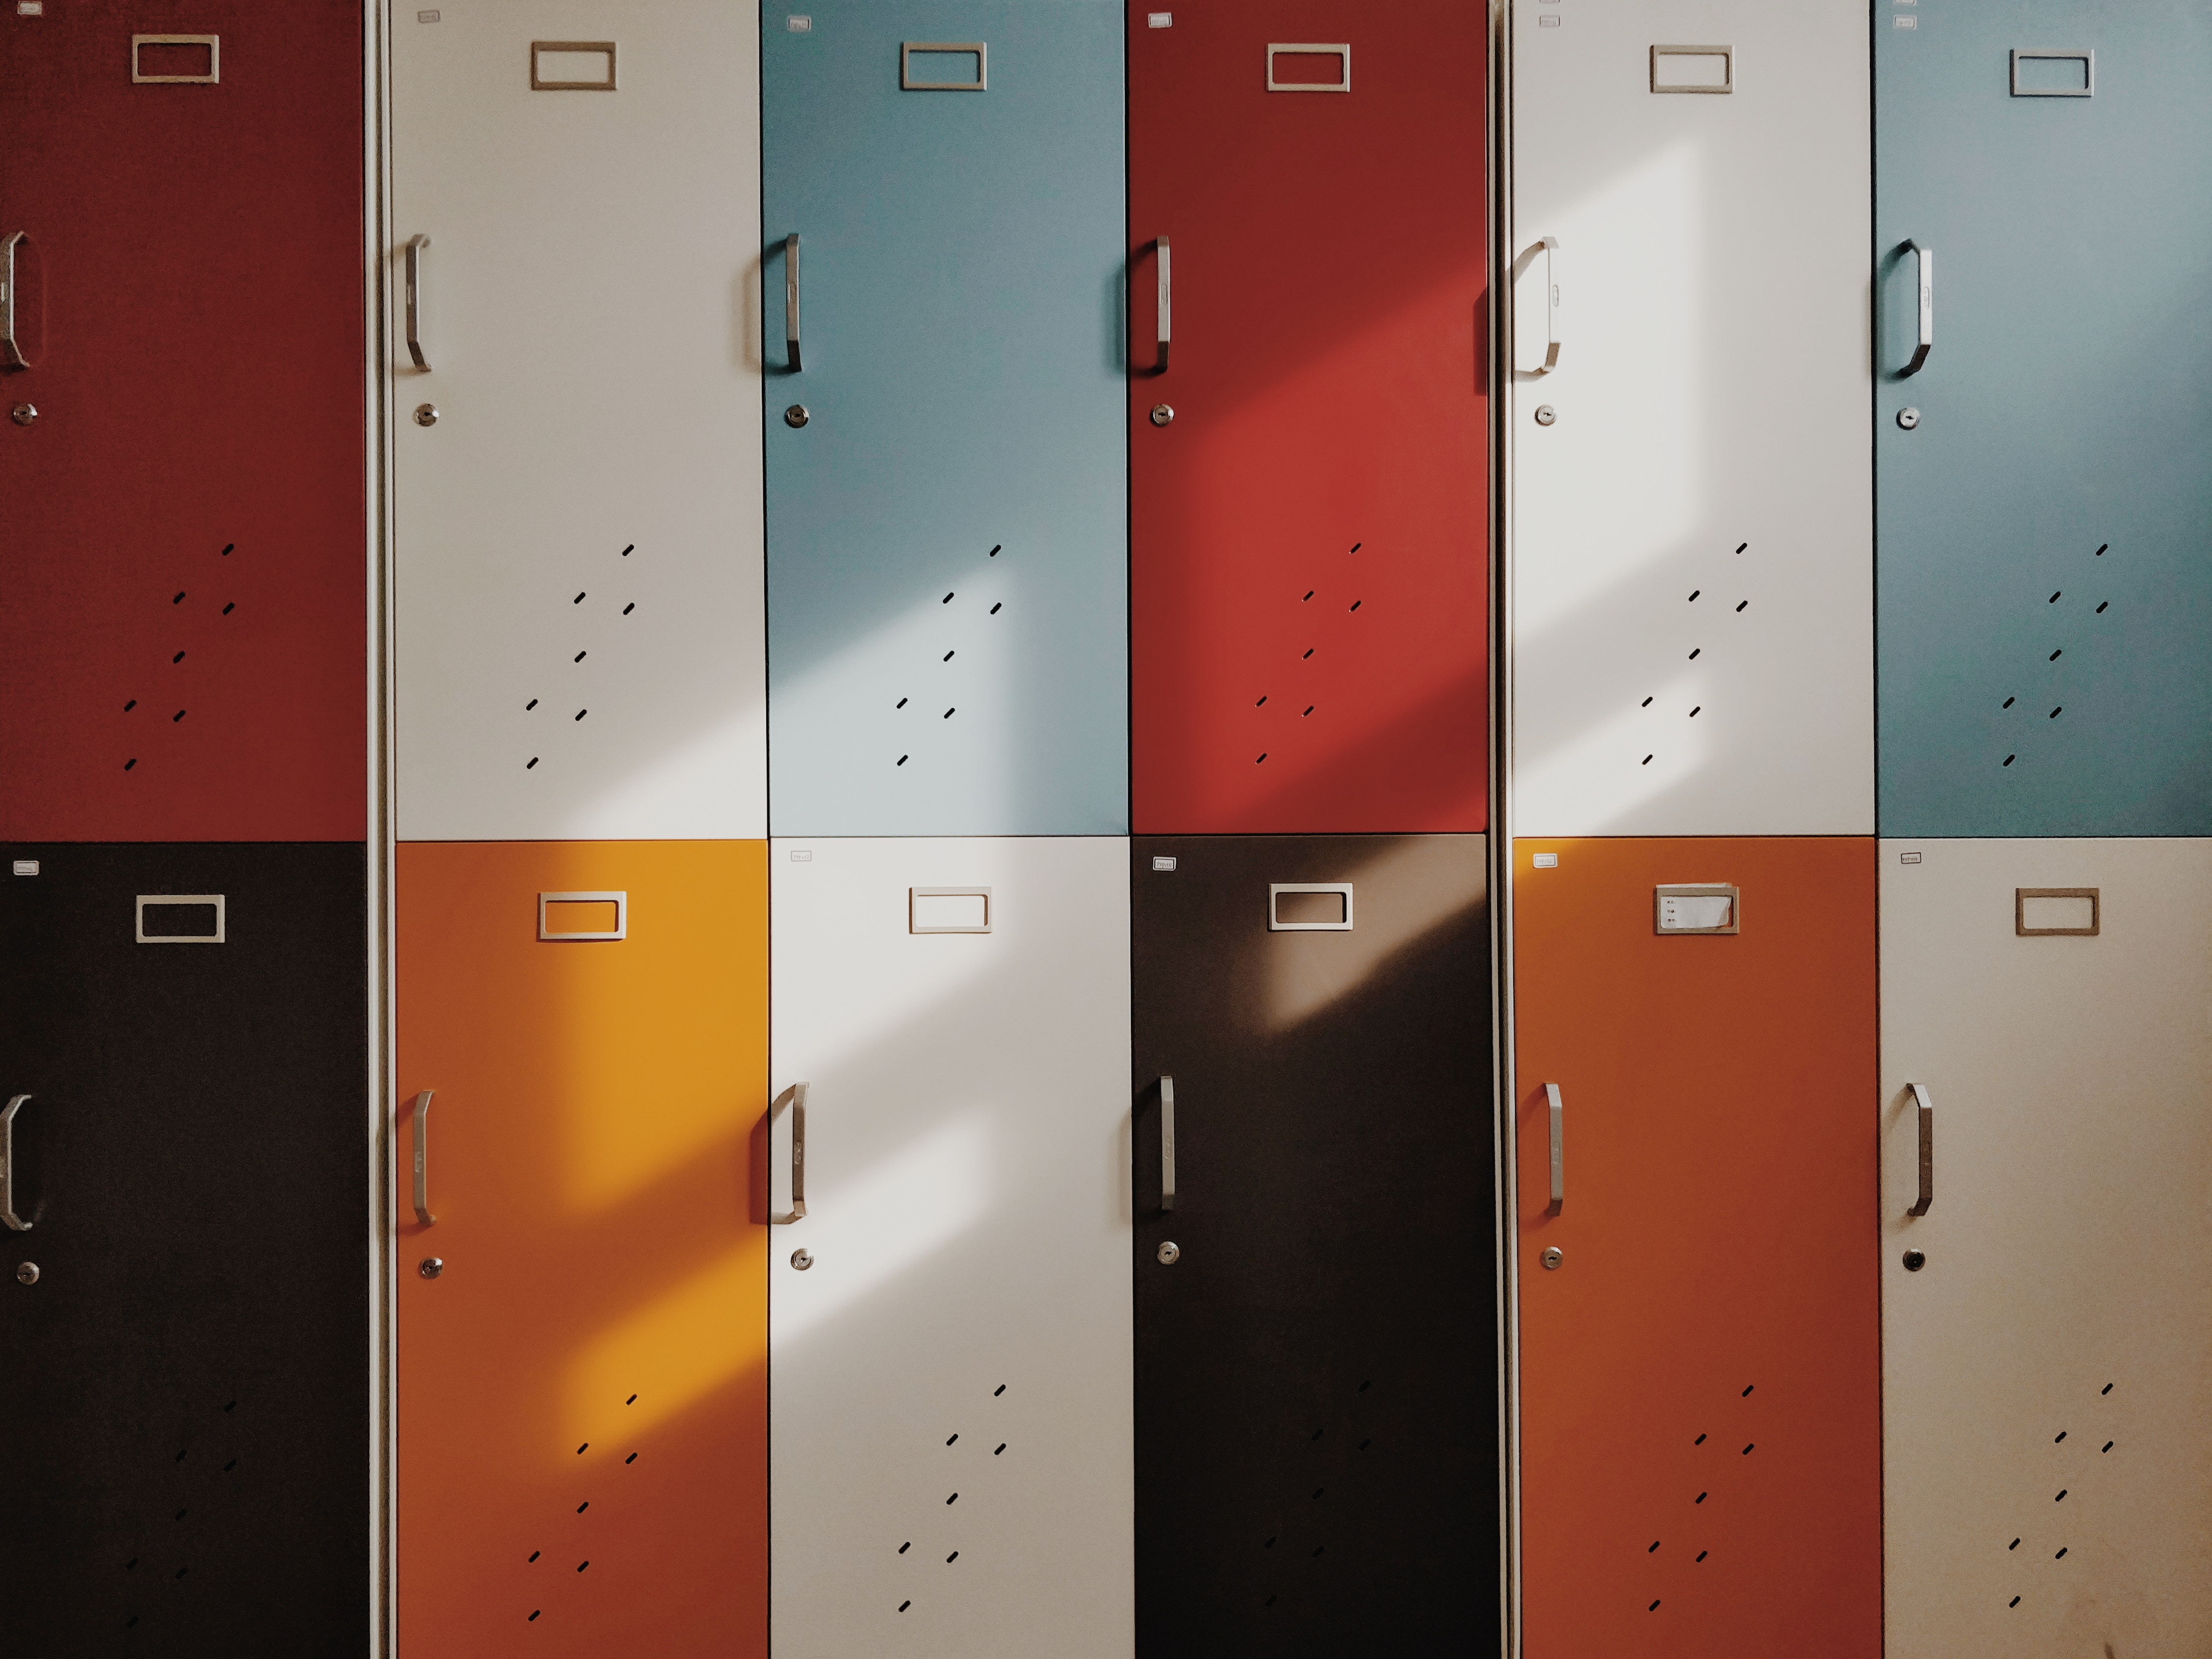 Windows Backgrounds minimalism, multicolored, motley, retro, doors, door, lockers